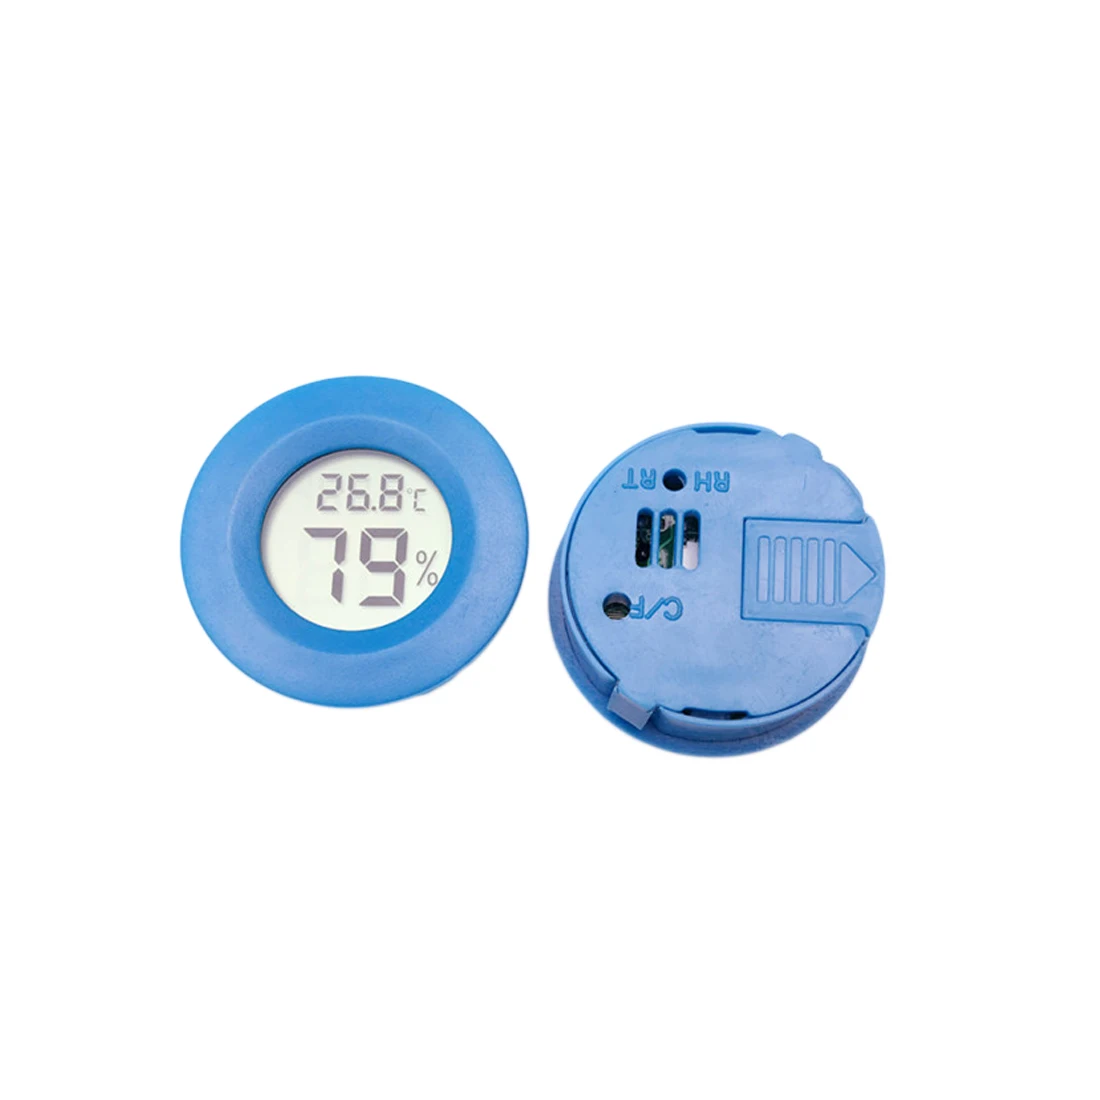 Высокая шт. 1 шт. Мини ЖК дисплей Цифровой термометр гигрометр холодильник морозильник Тестер Температура измеритель влажности детектор - Цвет: Синий